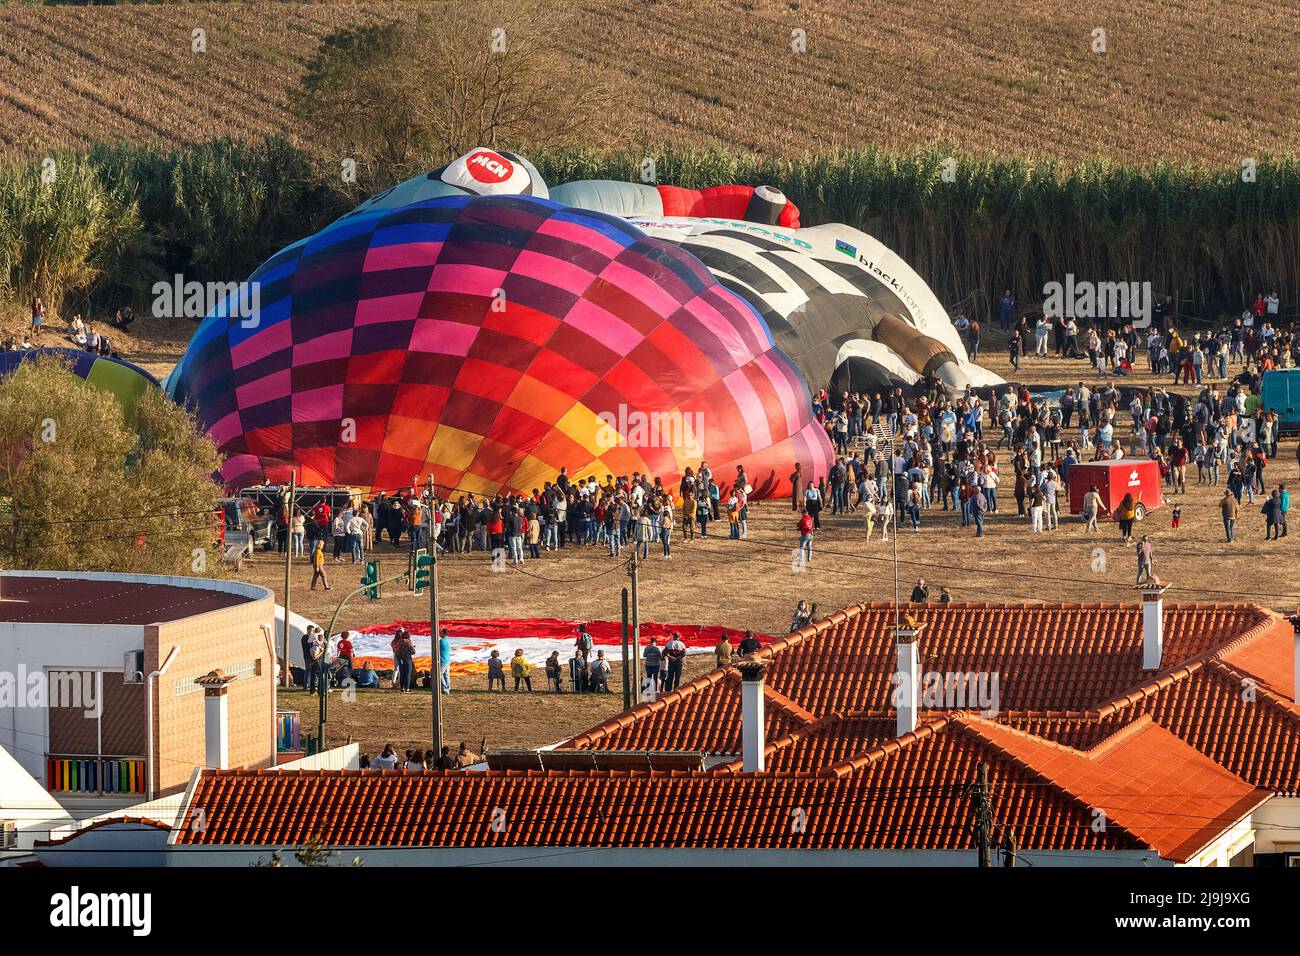 Coruche, Portugal - 13 novembre 2021 : des ballons à air chaud sont gonflés au Festival International de Ballooning de Coruche au Portugal. Banque D'Images